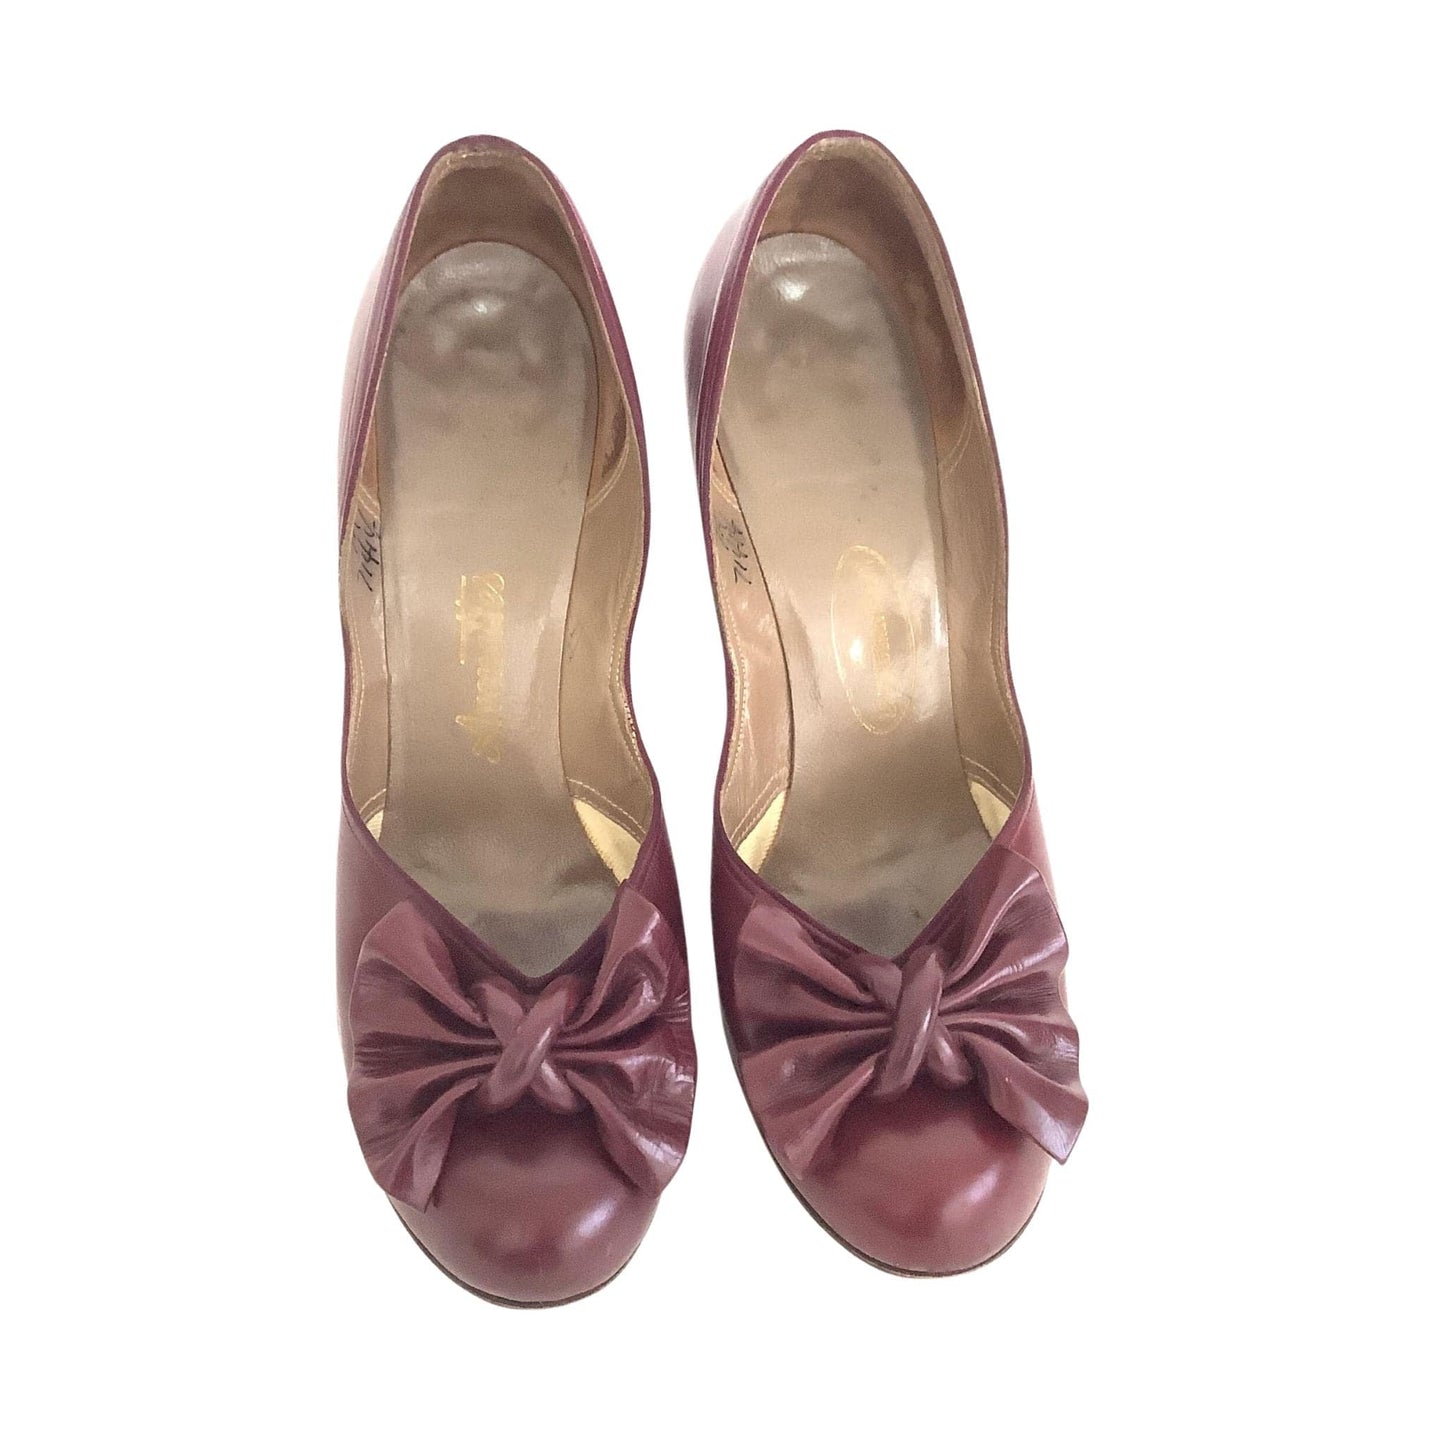 1940s Pump Shoes 7.5 / Burgundy / Vintage 1940s